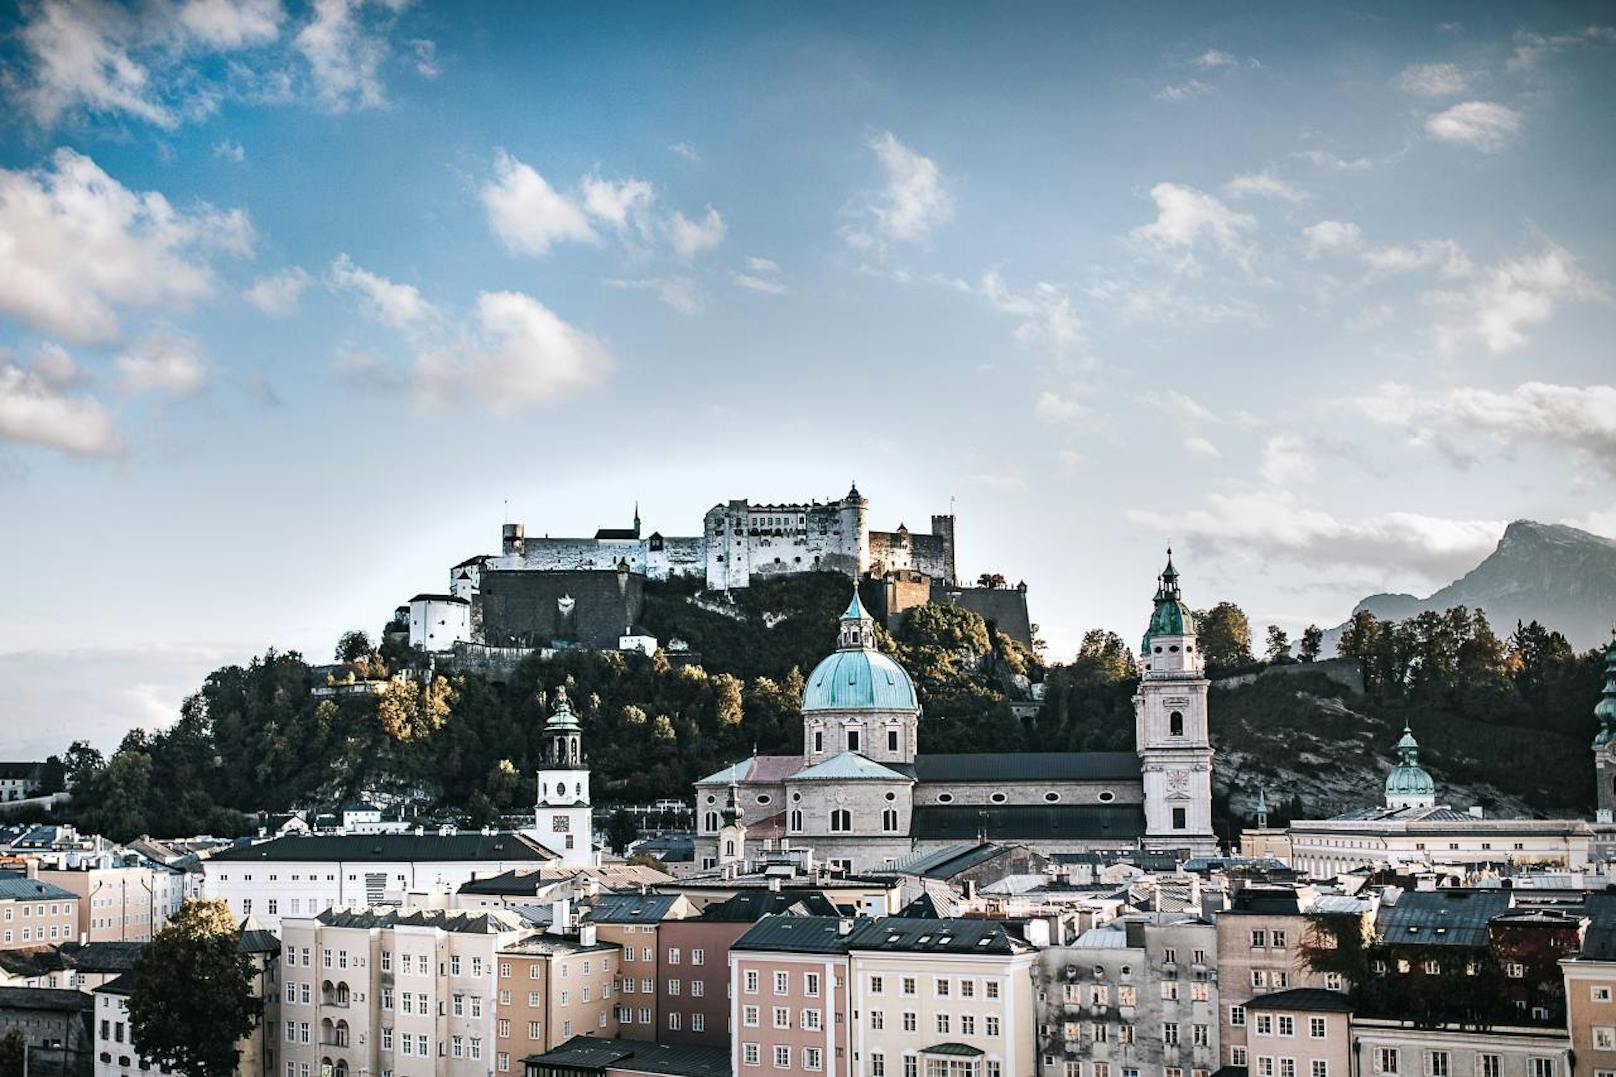 Salzburg ist auf Platz 1 eins des heurigen Rankings von "Lonely Planet".